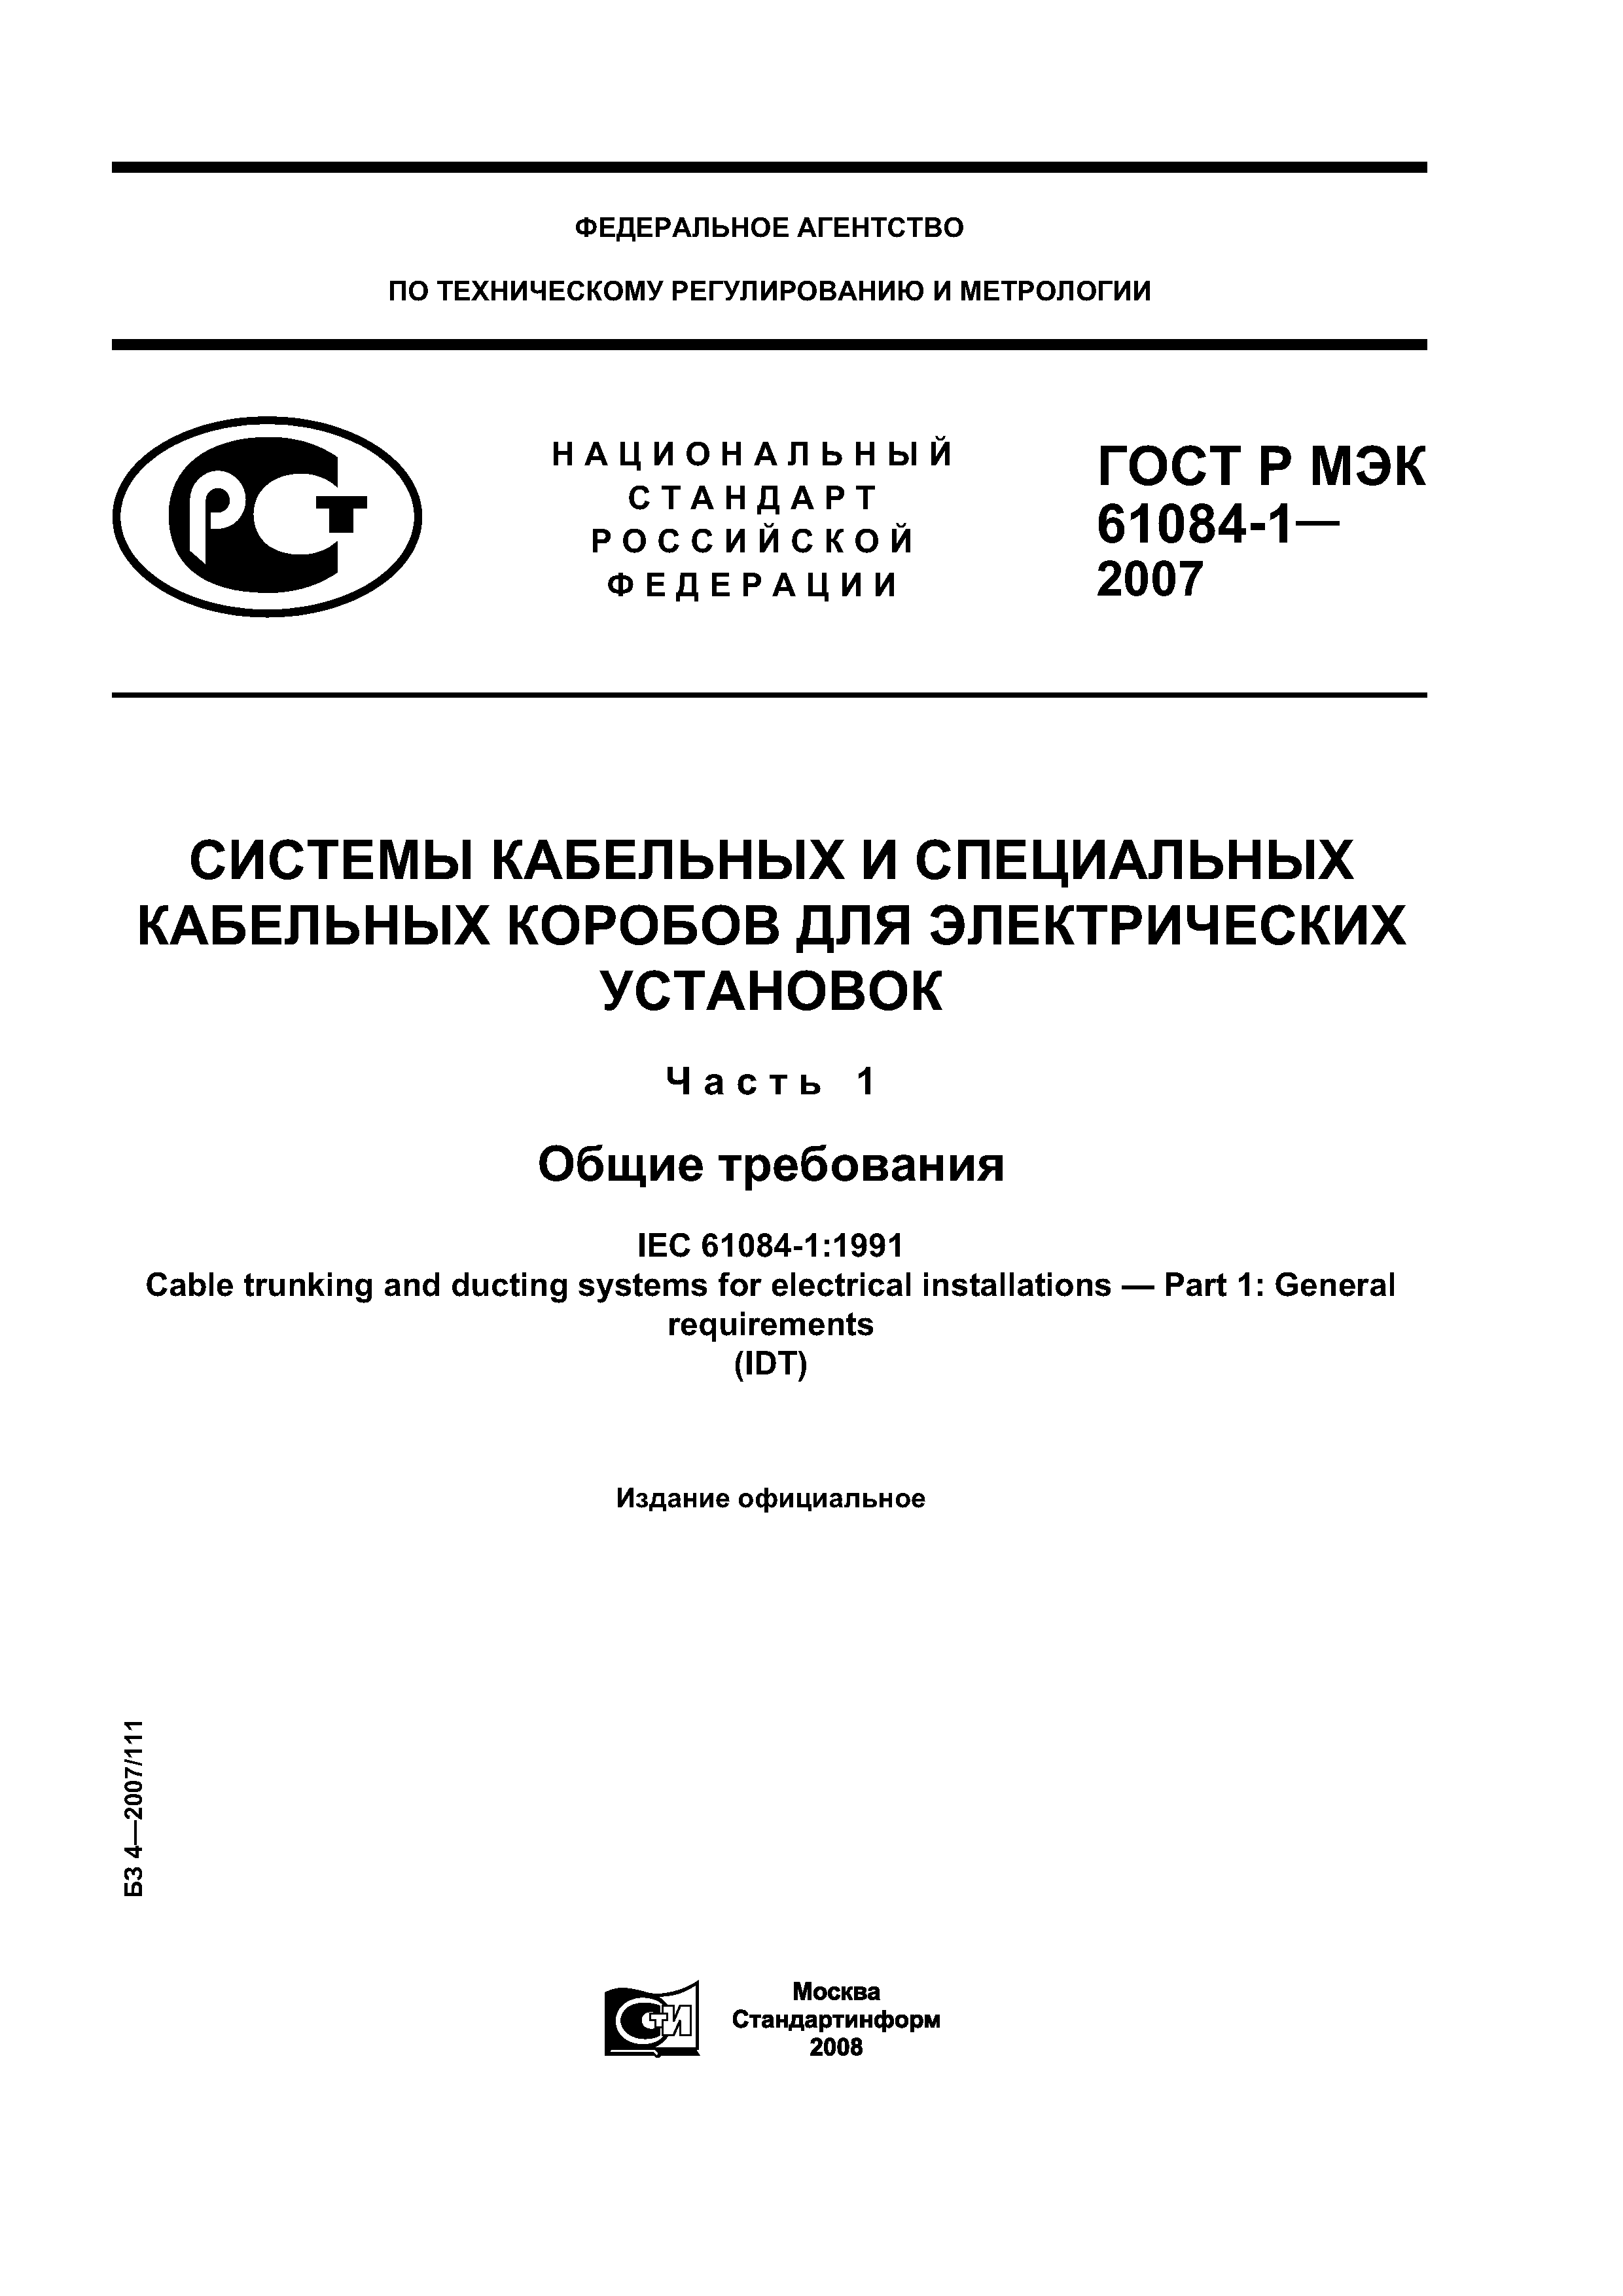 ГОСТ Р МЭК 61084-1-2007